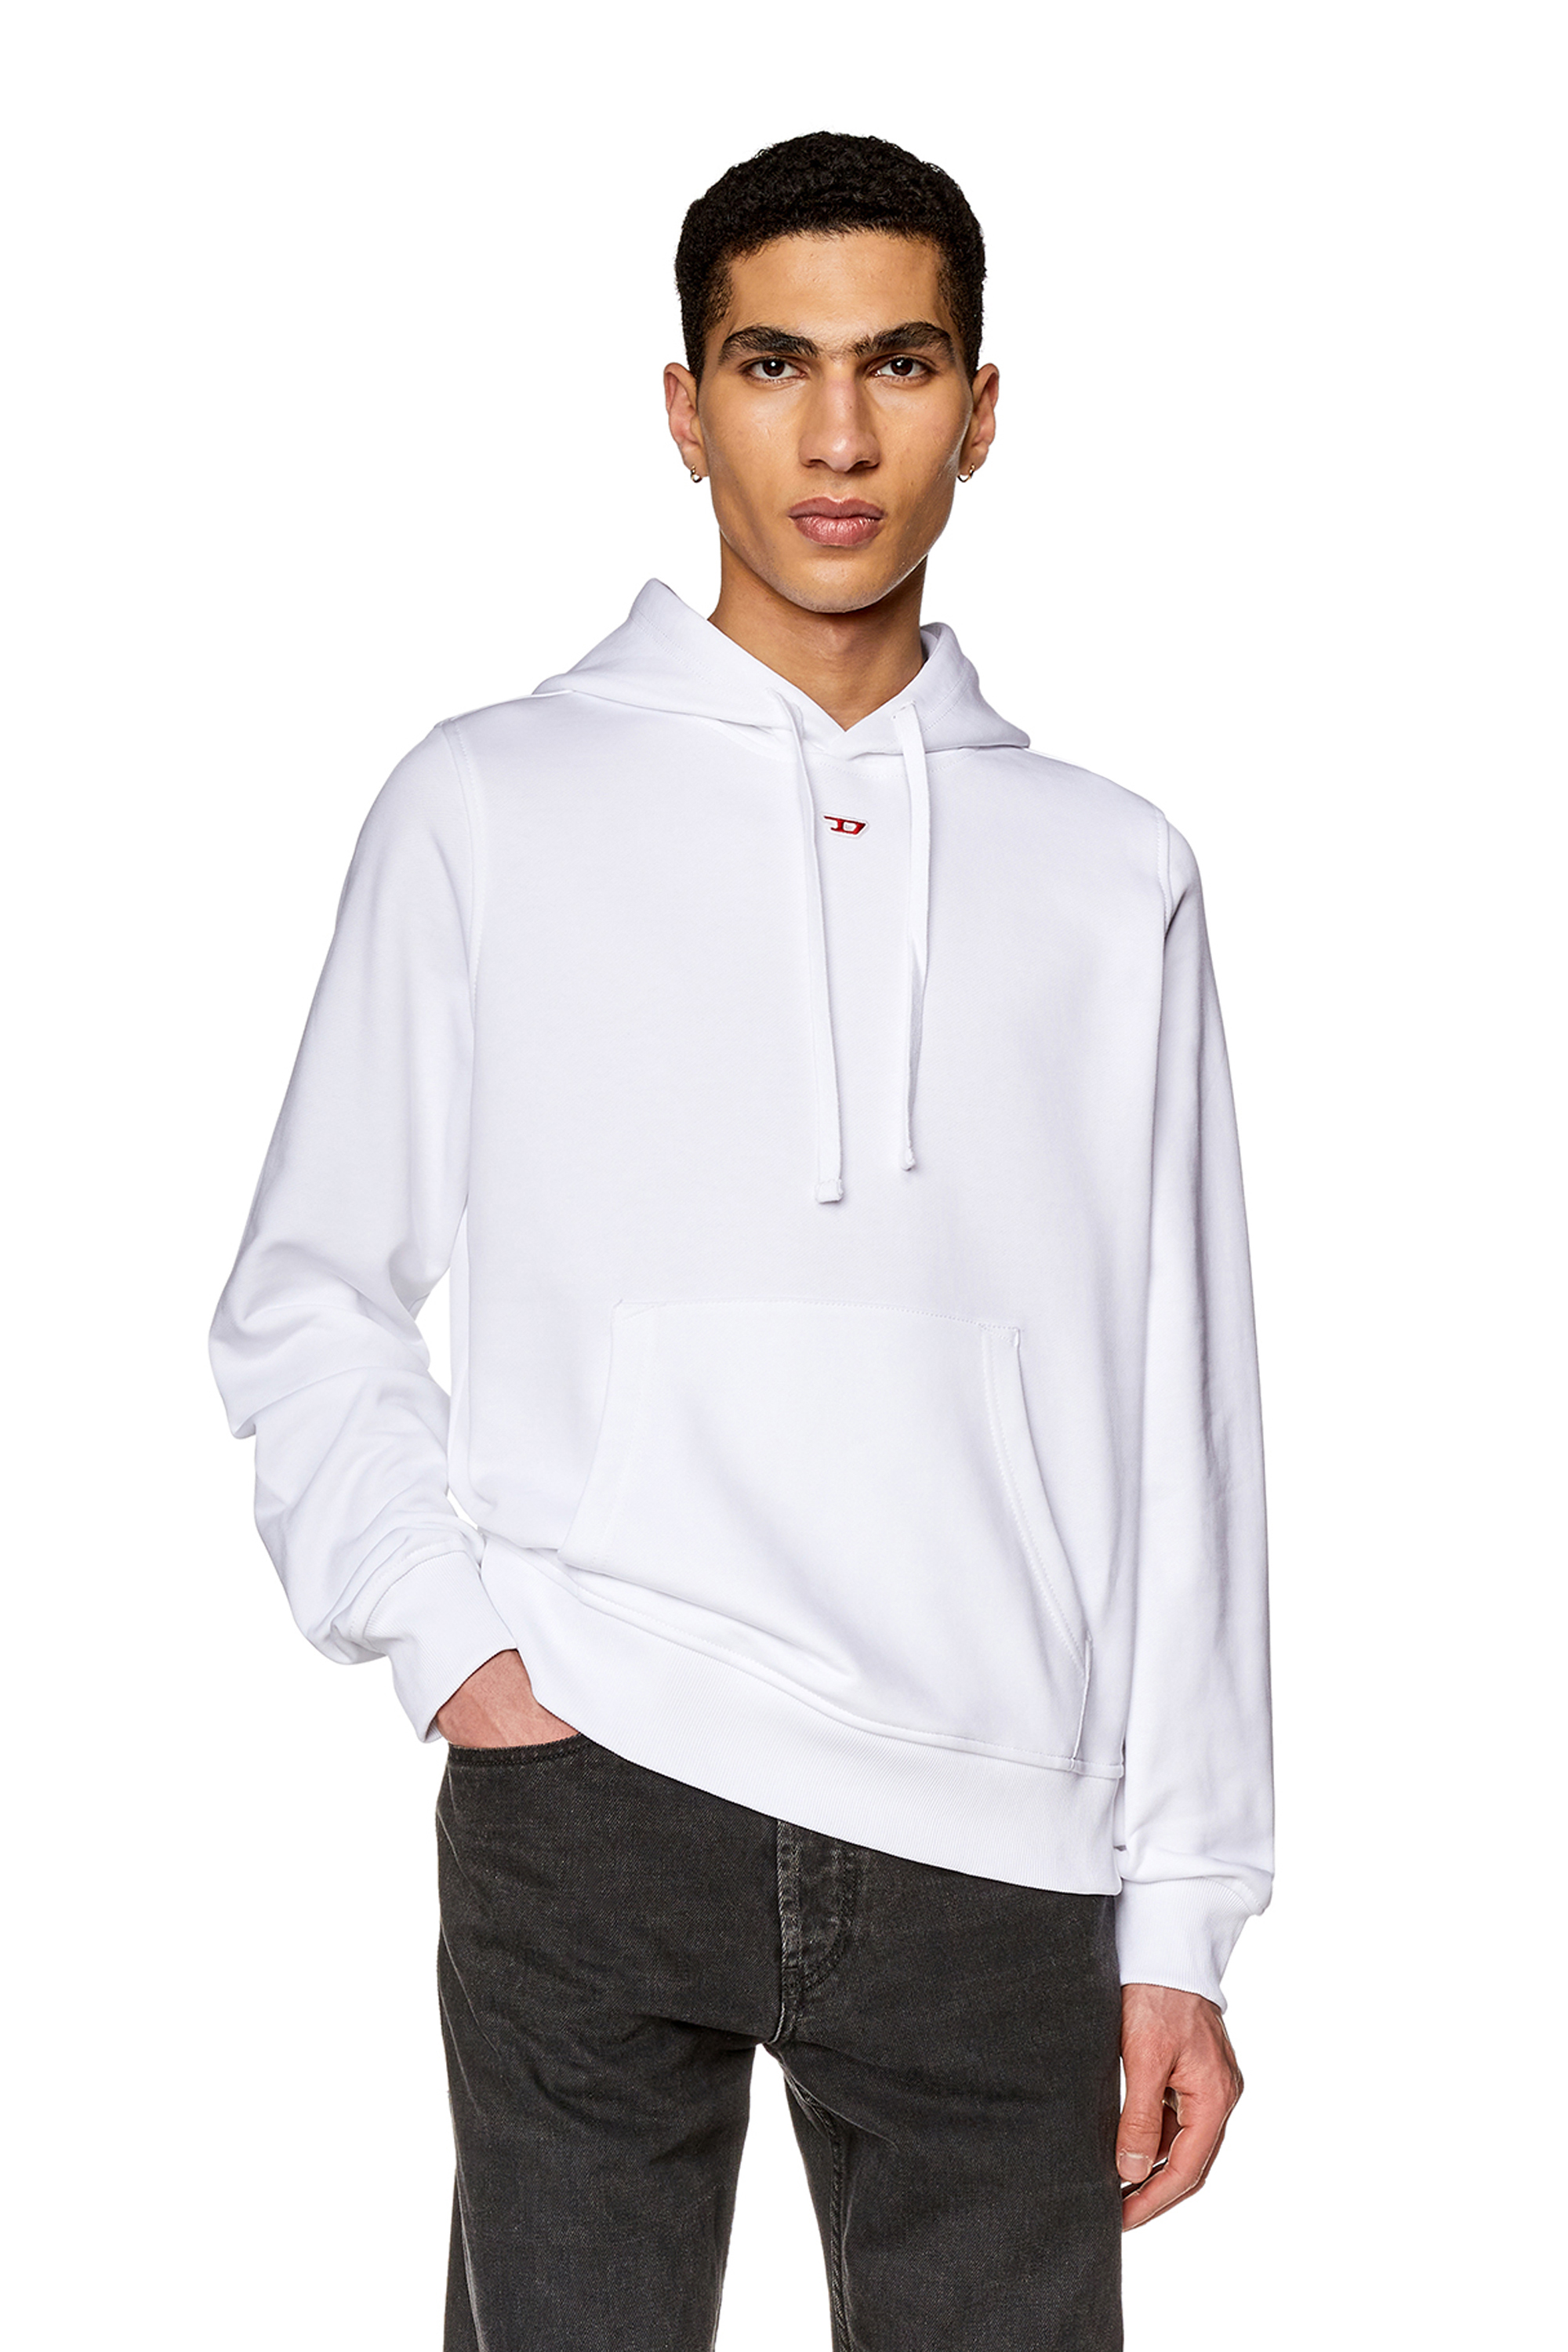 Diesel - Sweat-shirt à capuche en coton avec mini empiècement D - Pull Cotton - Homme - Blanc